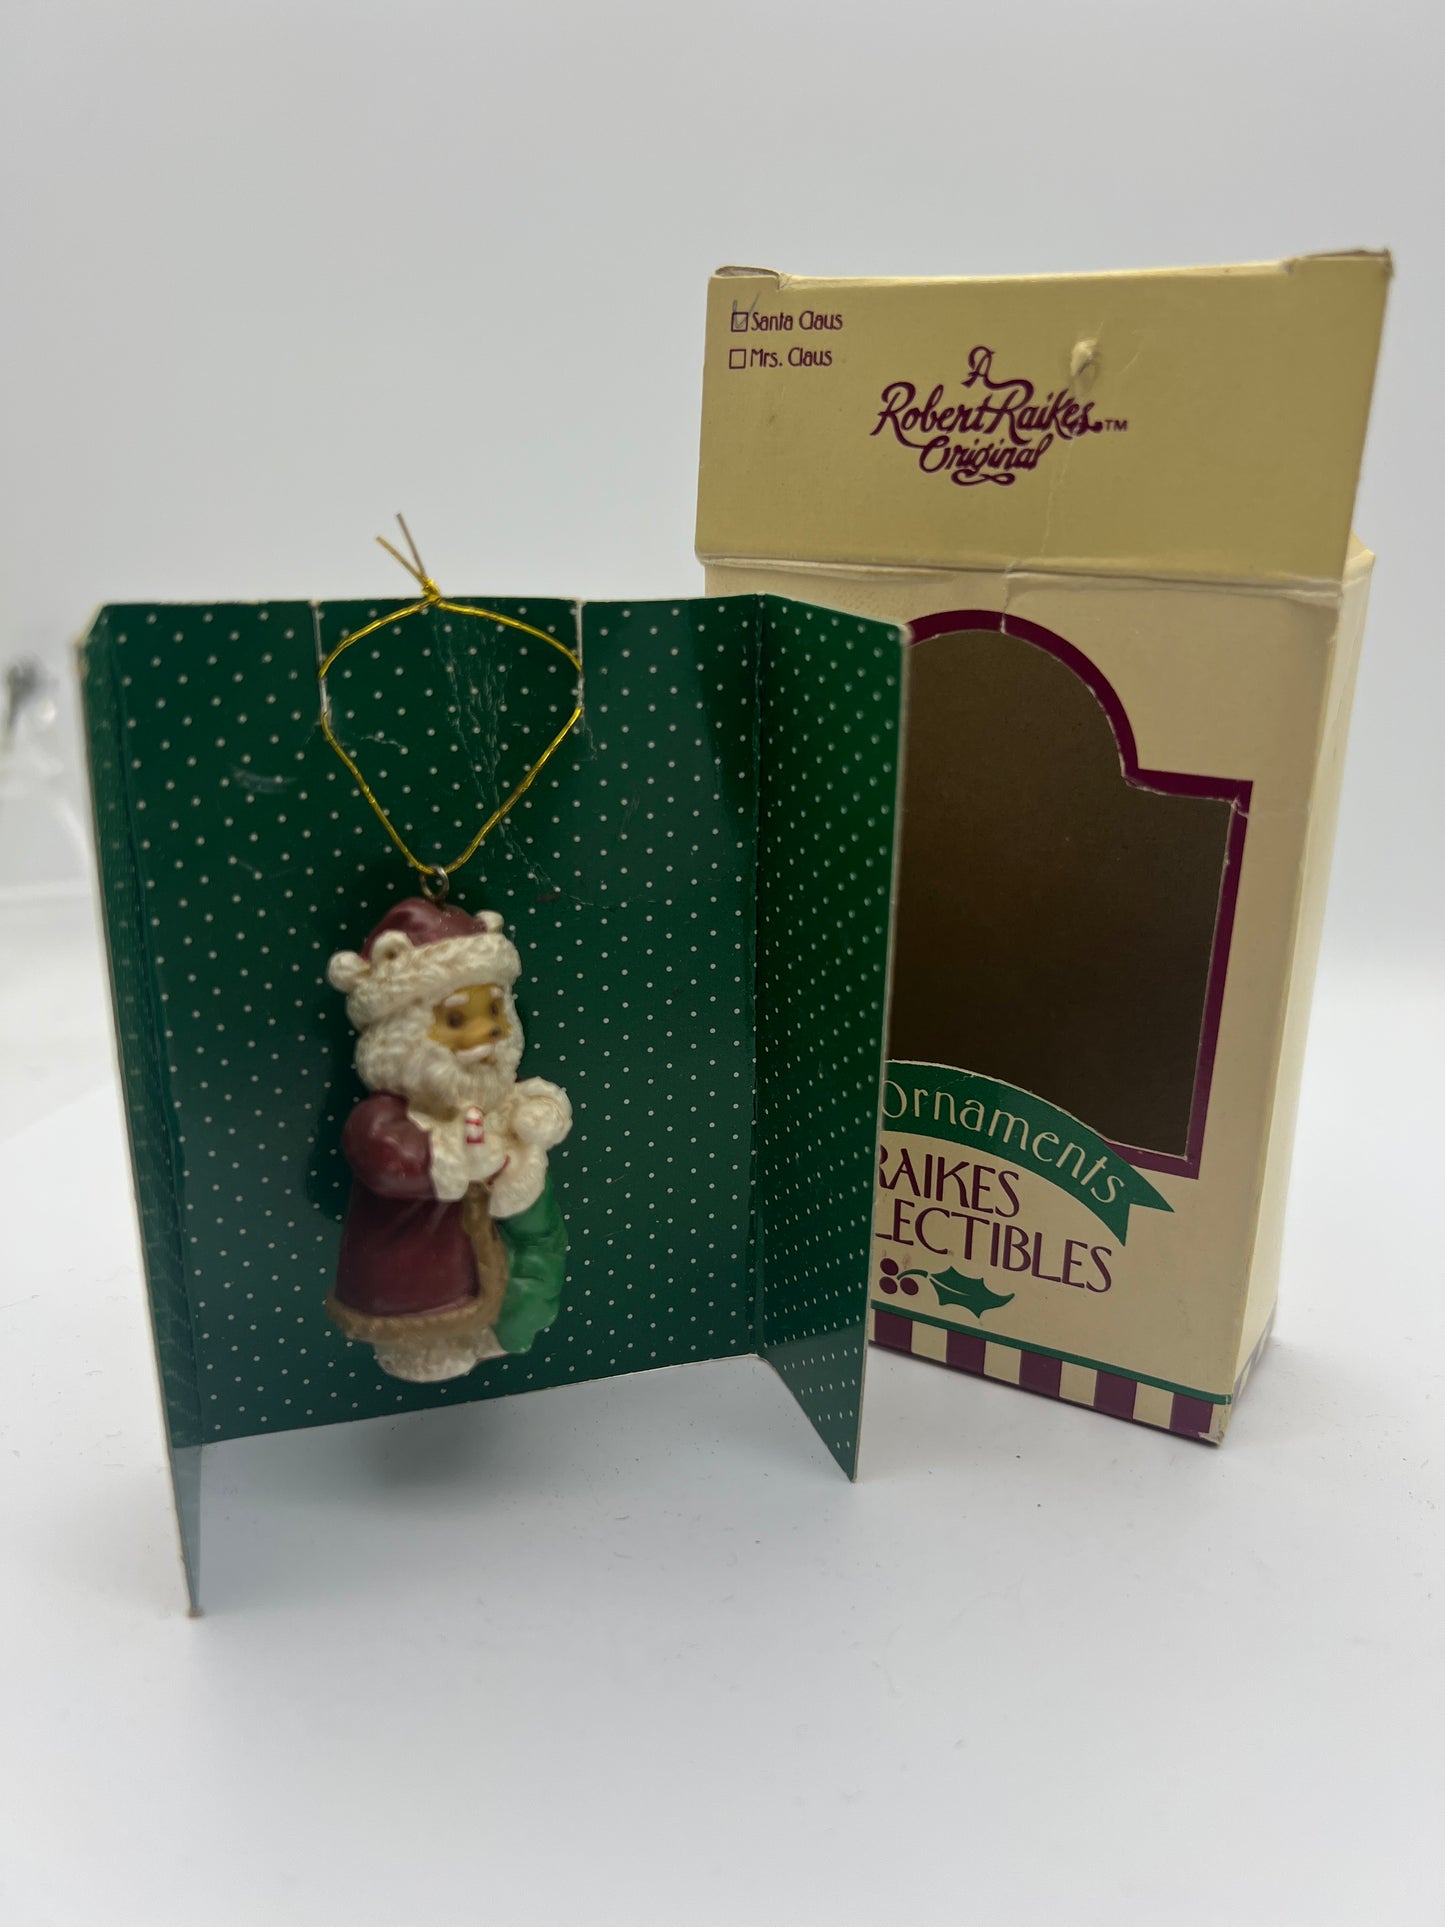 Raikes Collectibles Mini Ornament - New In Box